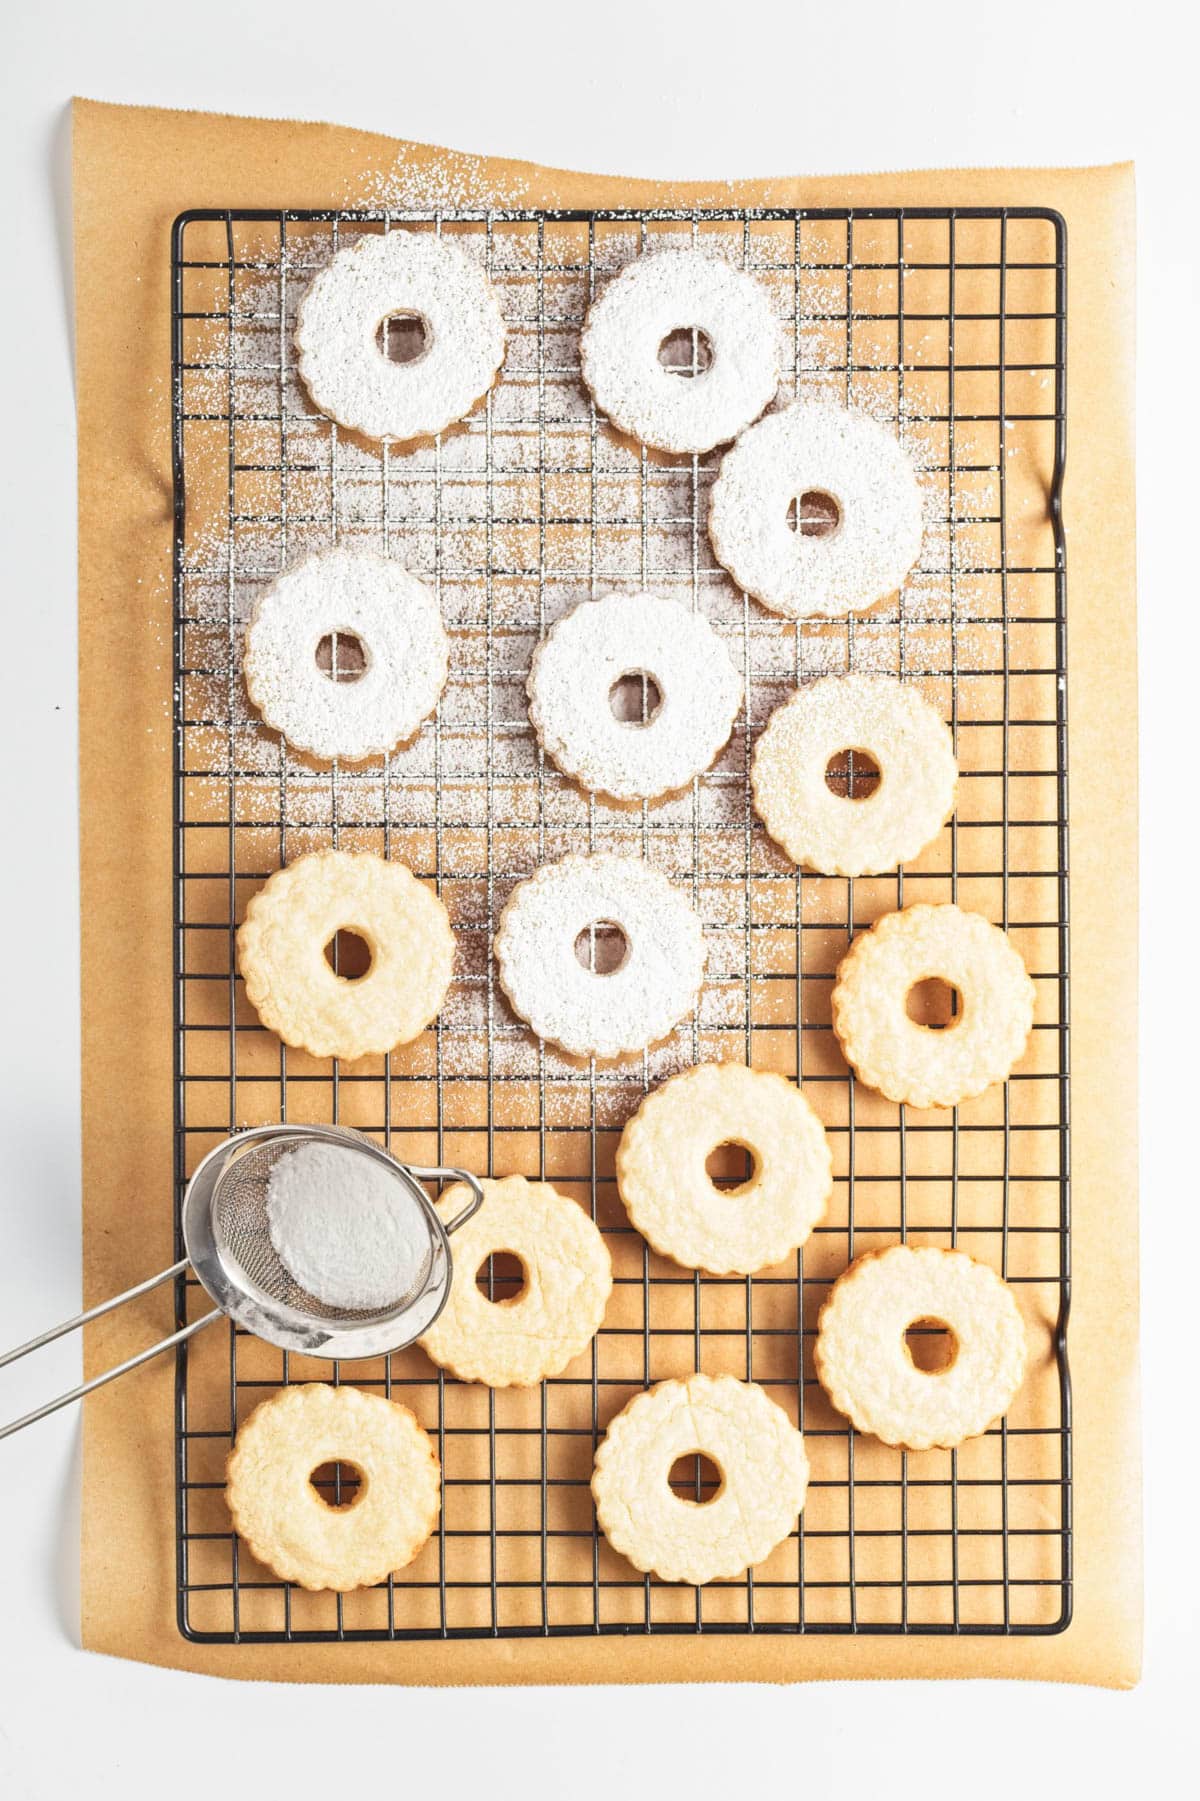 Cookies being sprinkled with powdered sugar.